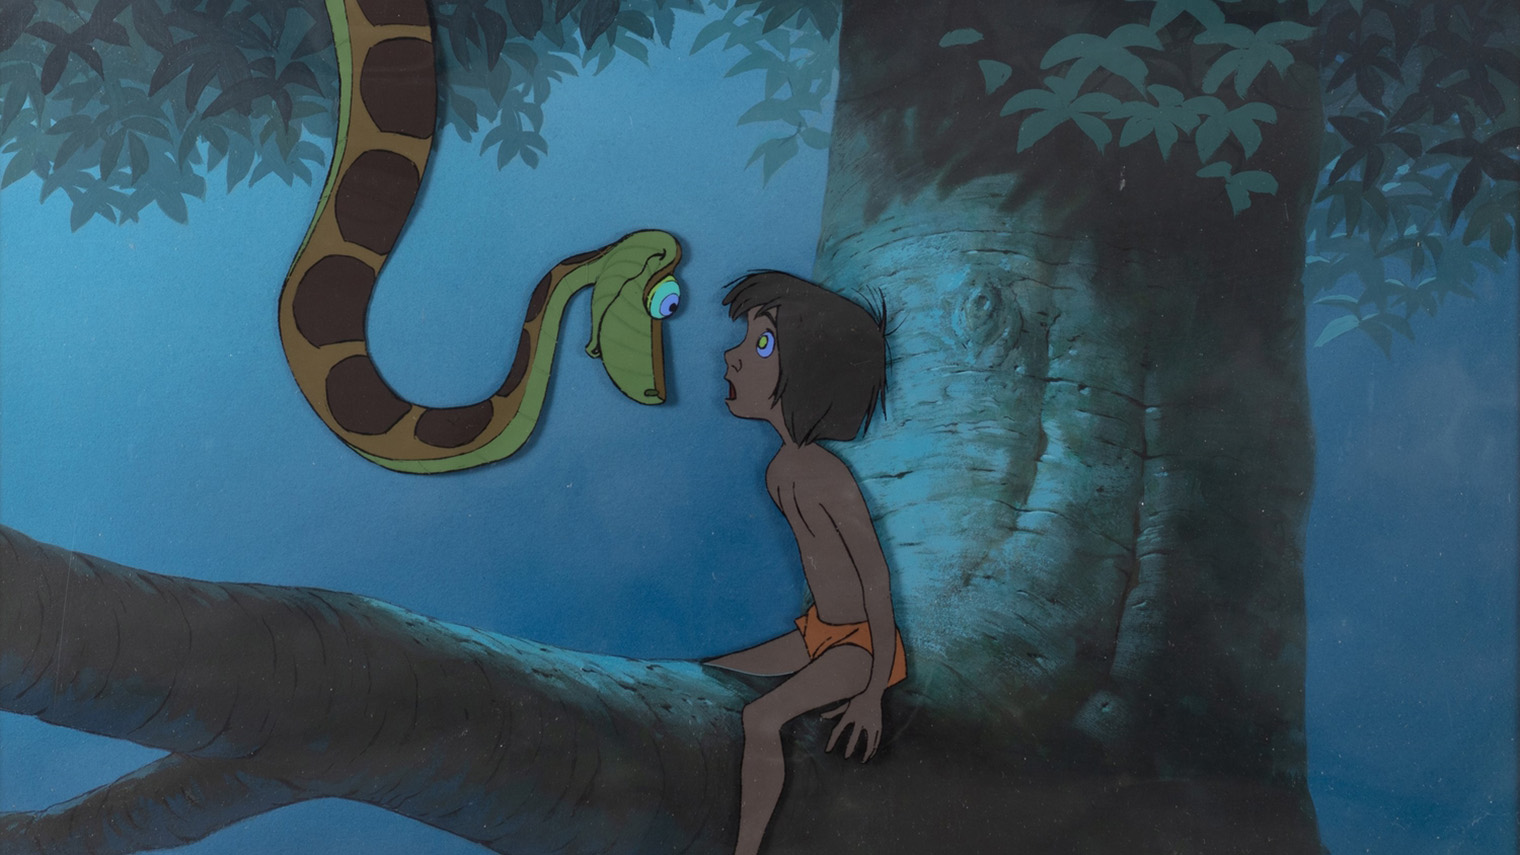 В «Книге джунглей» от Disney питон Каа стал злодеем — хотя в книге он не отрицательный персонаж. Создатели решили, что образ змеи неприятнее, чем тигра Шер-Хана. Источник: Disney